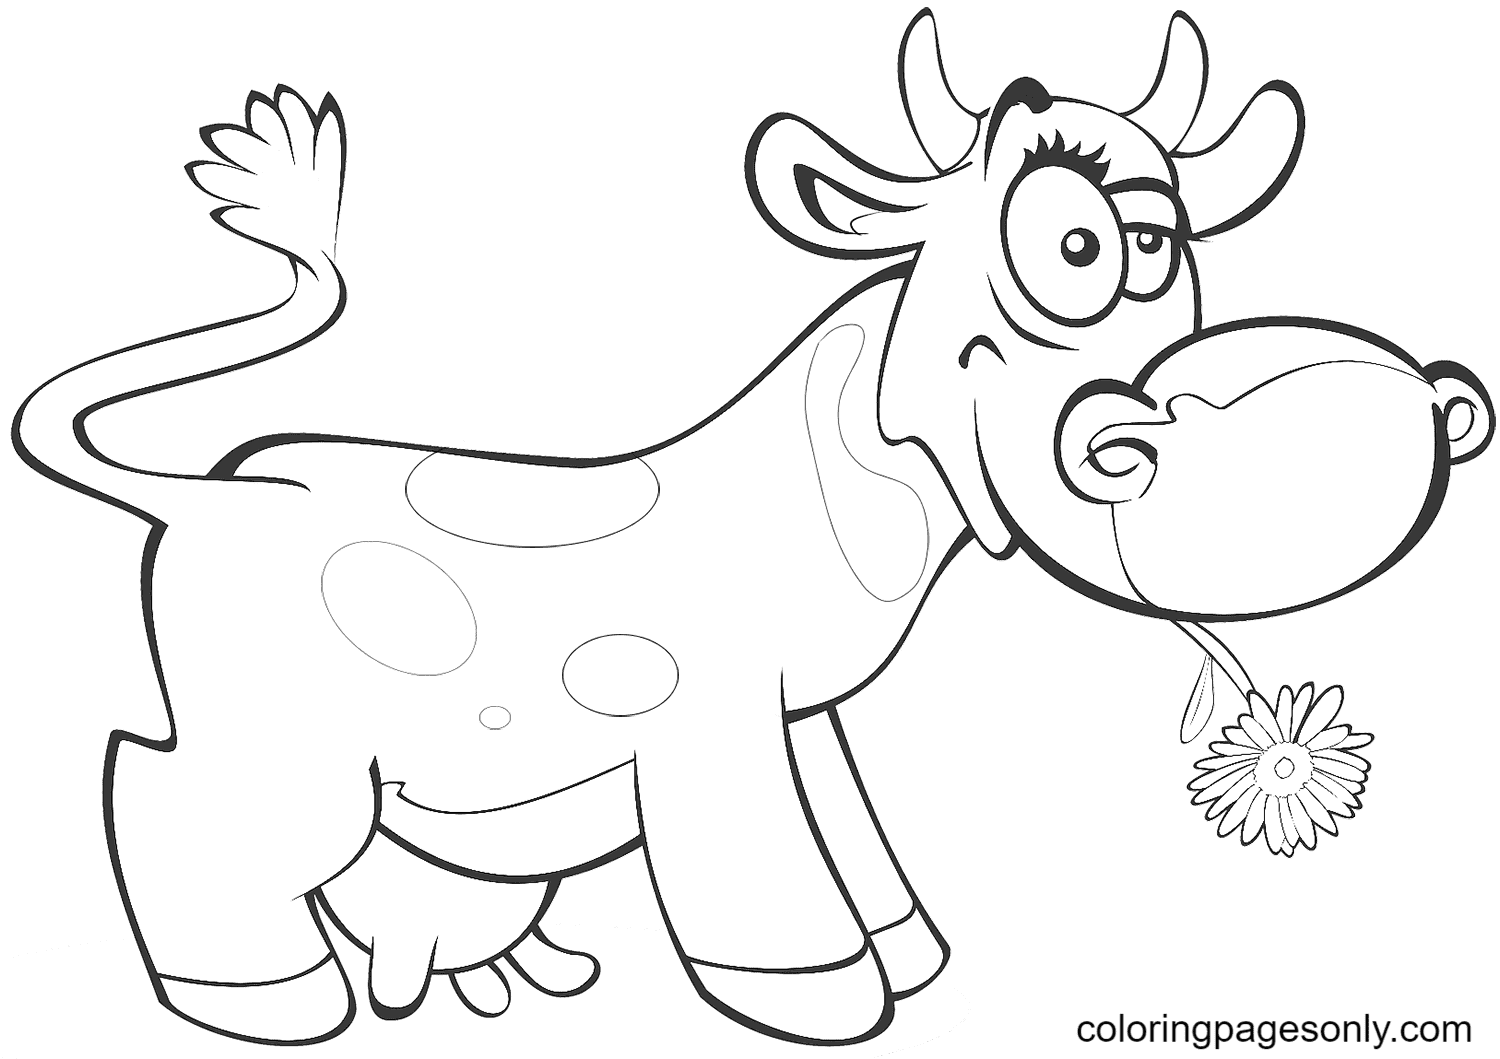 Página para colorear de vaca de dibujos animados